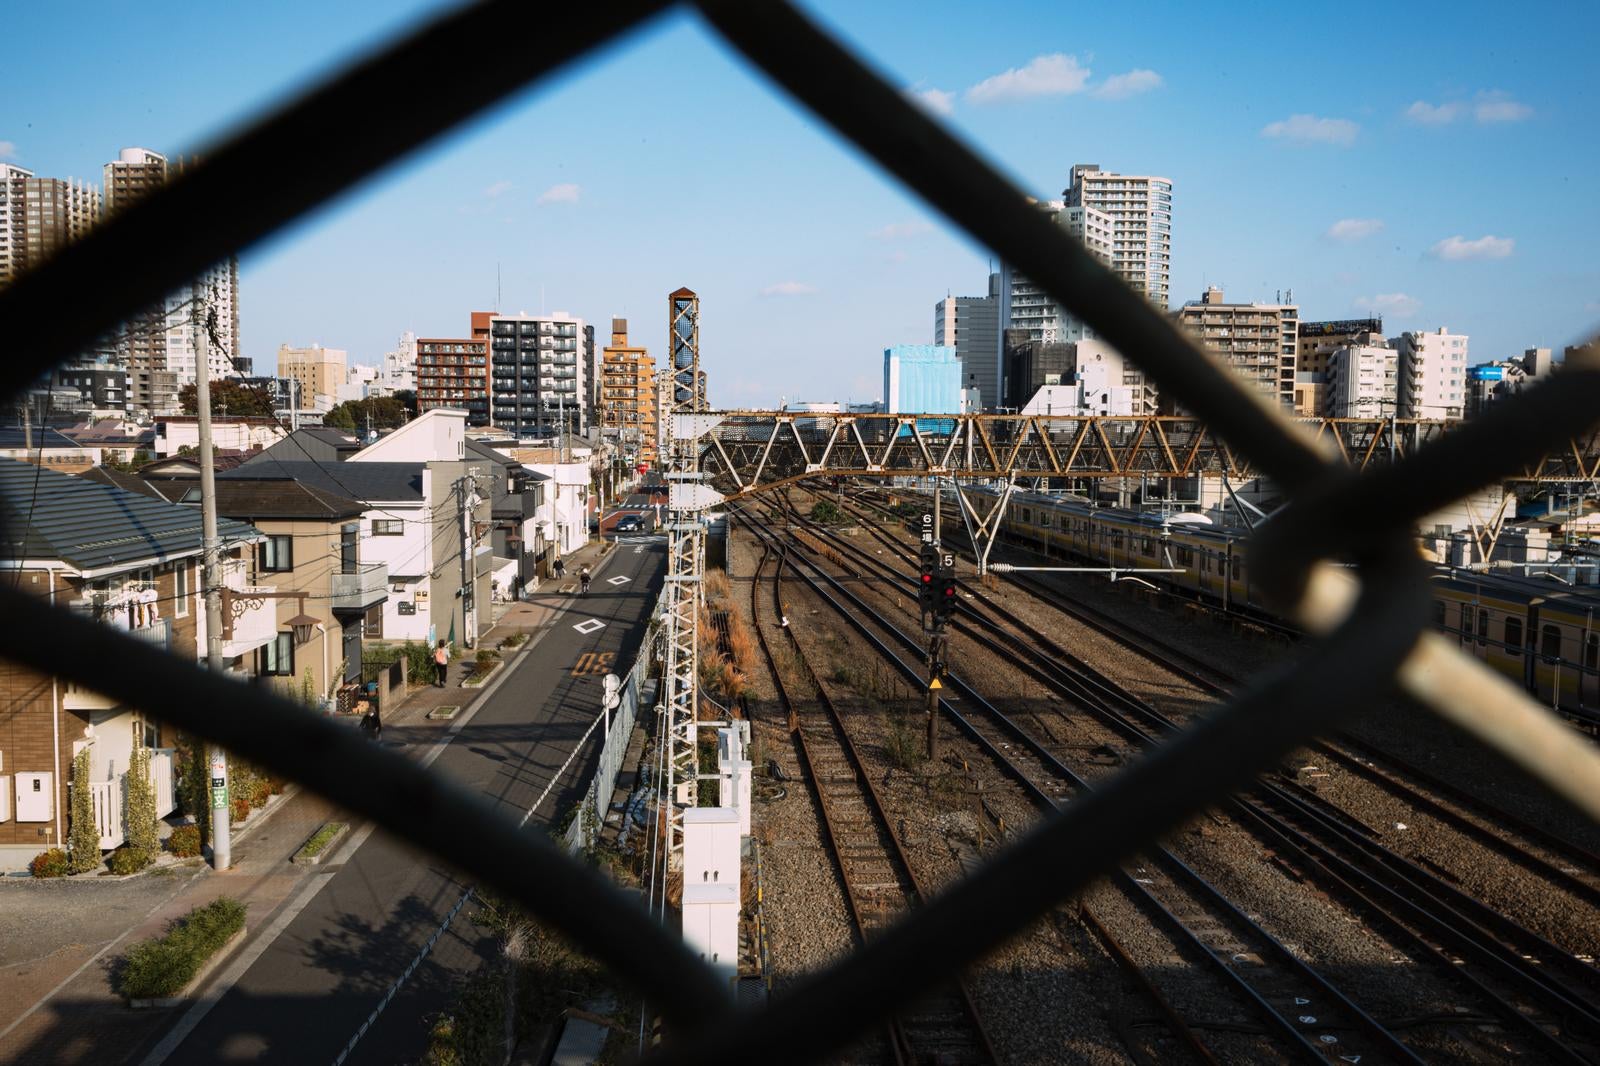 「金網越しから見える三鷹電車庫跨線橋からの景観」の写真